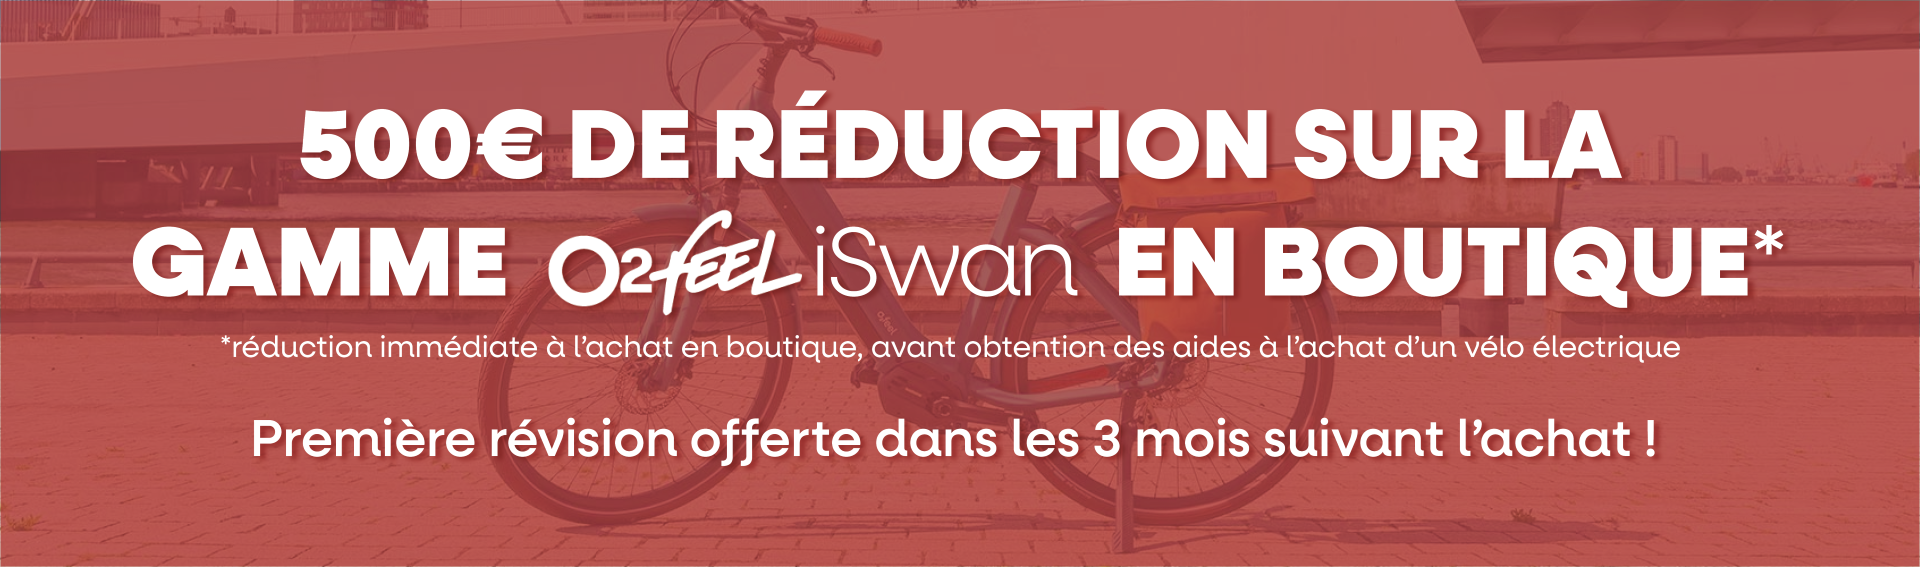 Bannière promotionnelle pour la réduction de 500€ sur les vélos électriques en boutique